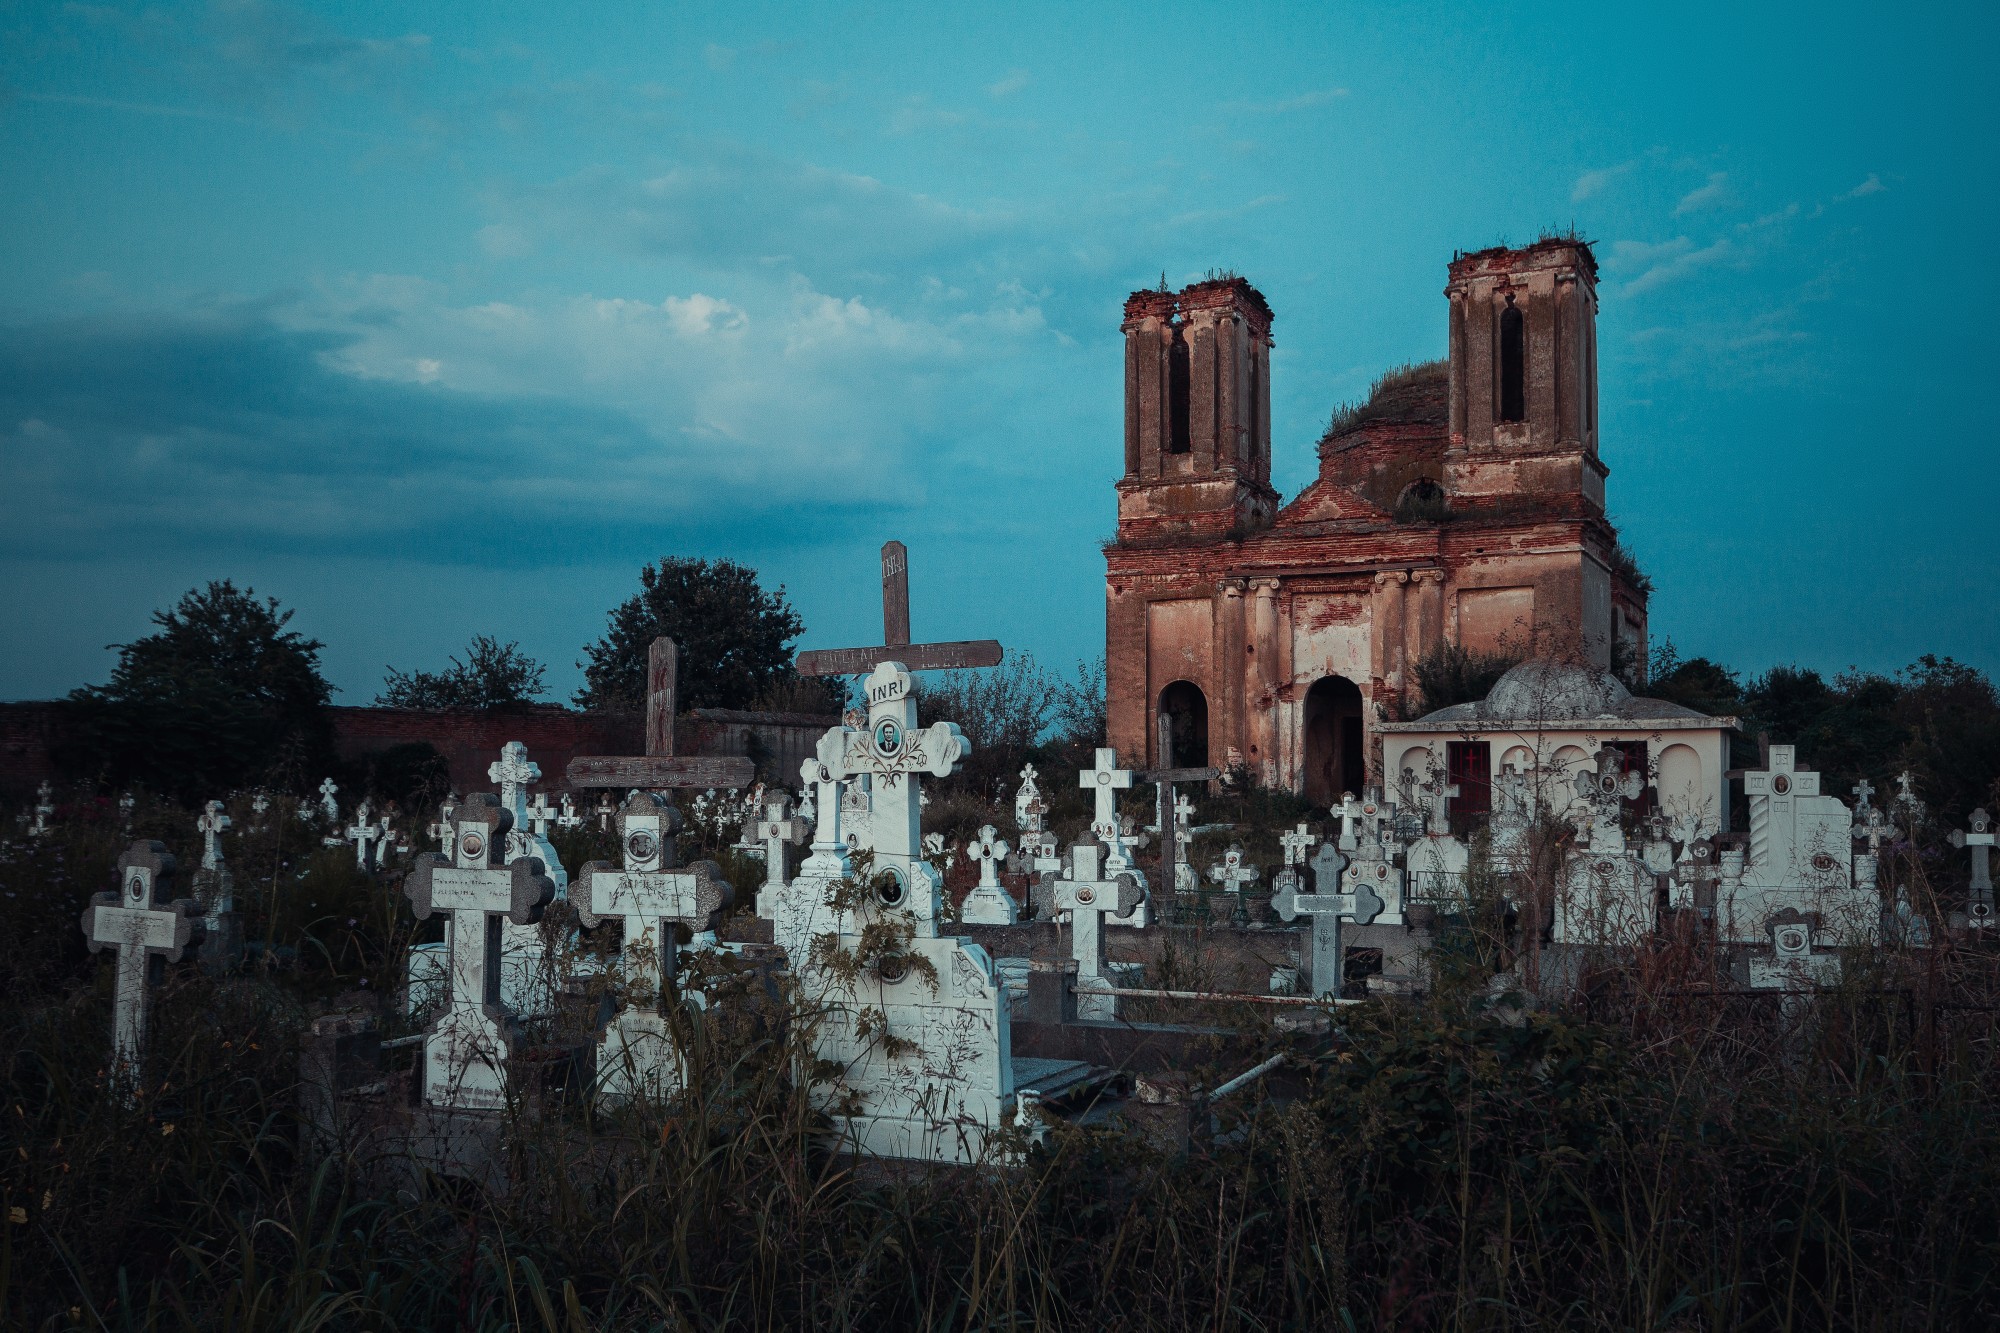 Fotografie einer bemoosten Kirchen-Ruine, die hinter weißen Grabsteinen steht.